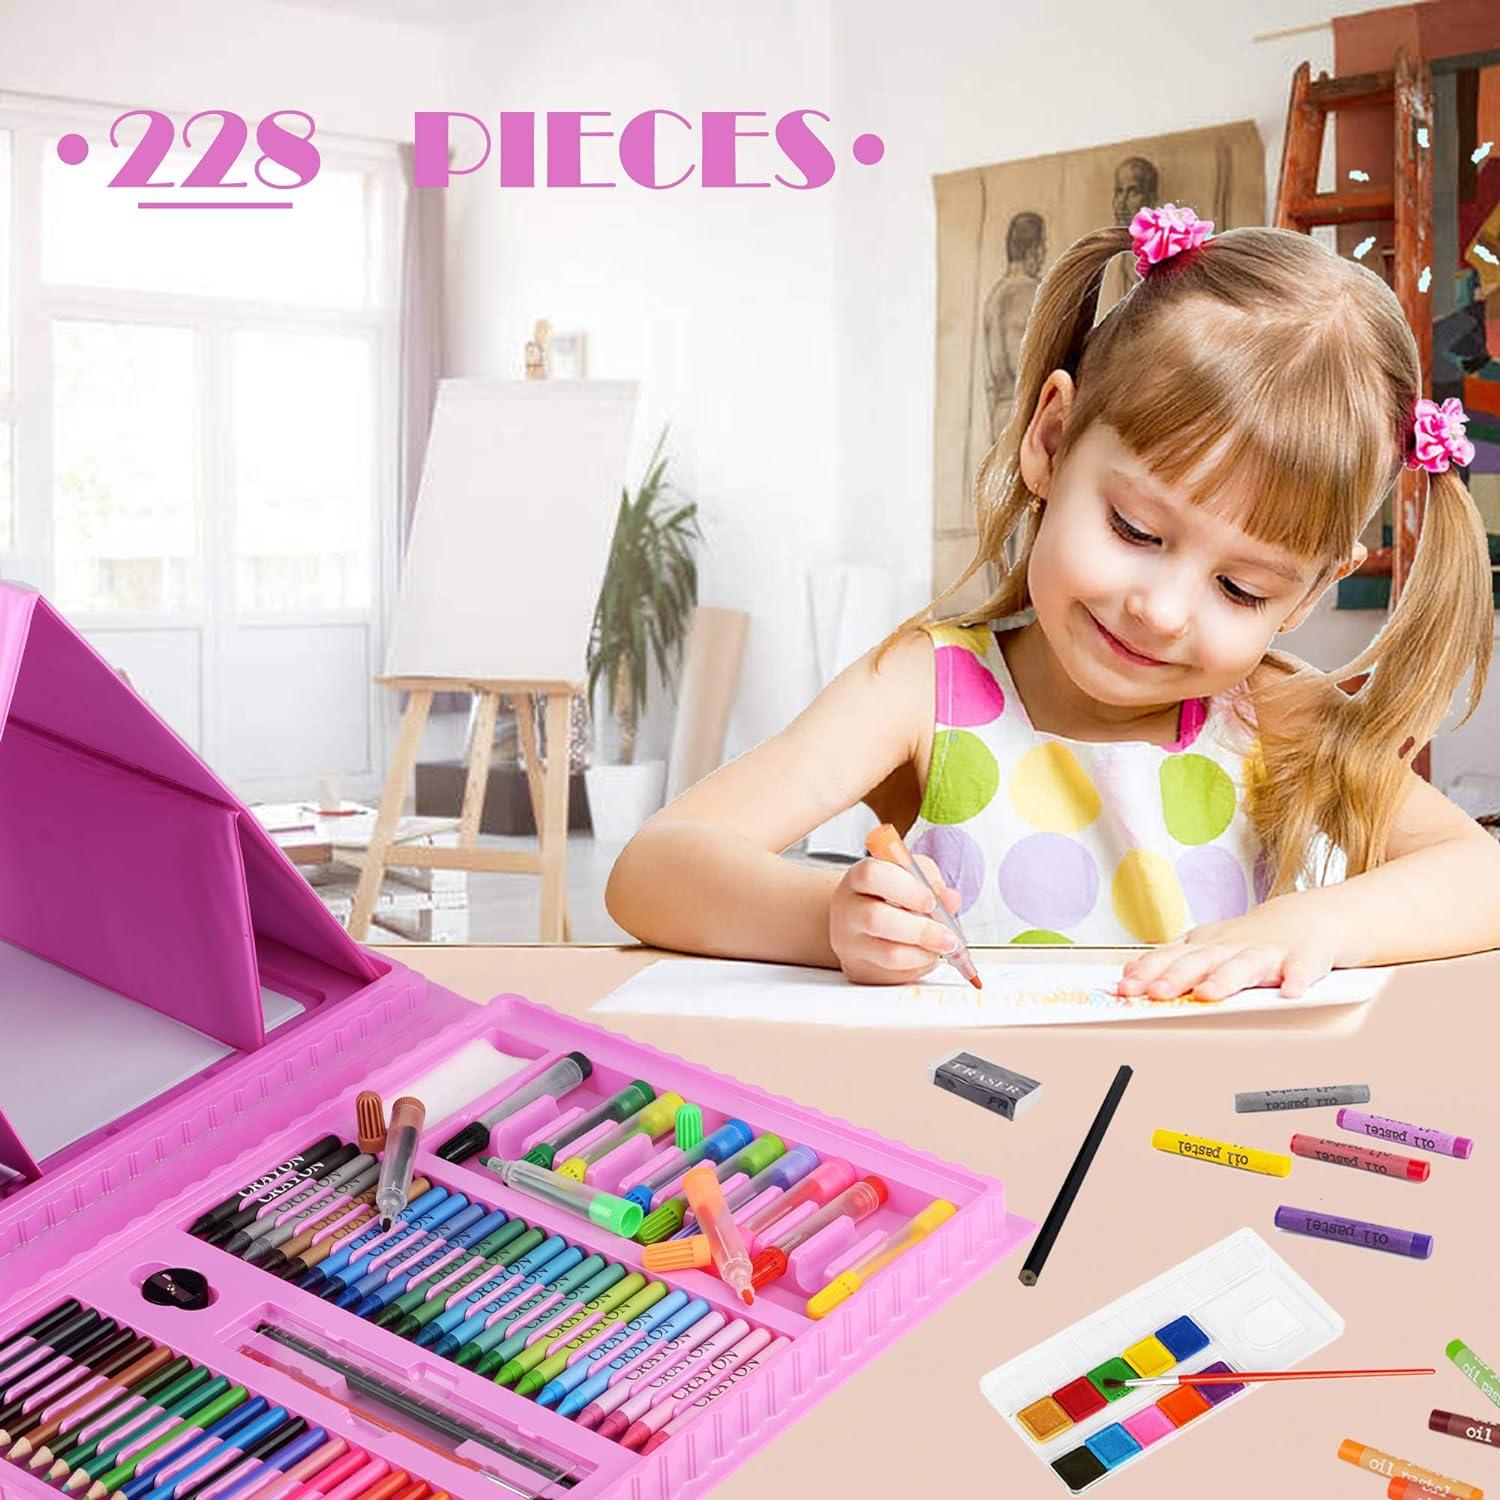 Cokiki Art Supplies, 184-Piece Drawing Art Set, Princess Pink Gift